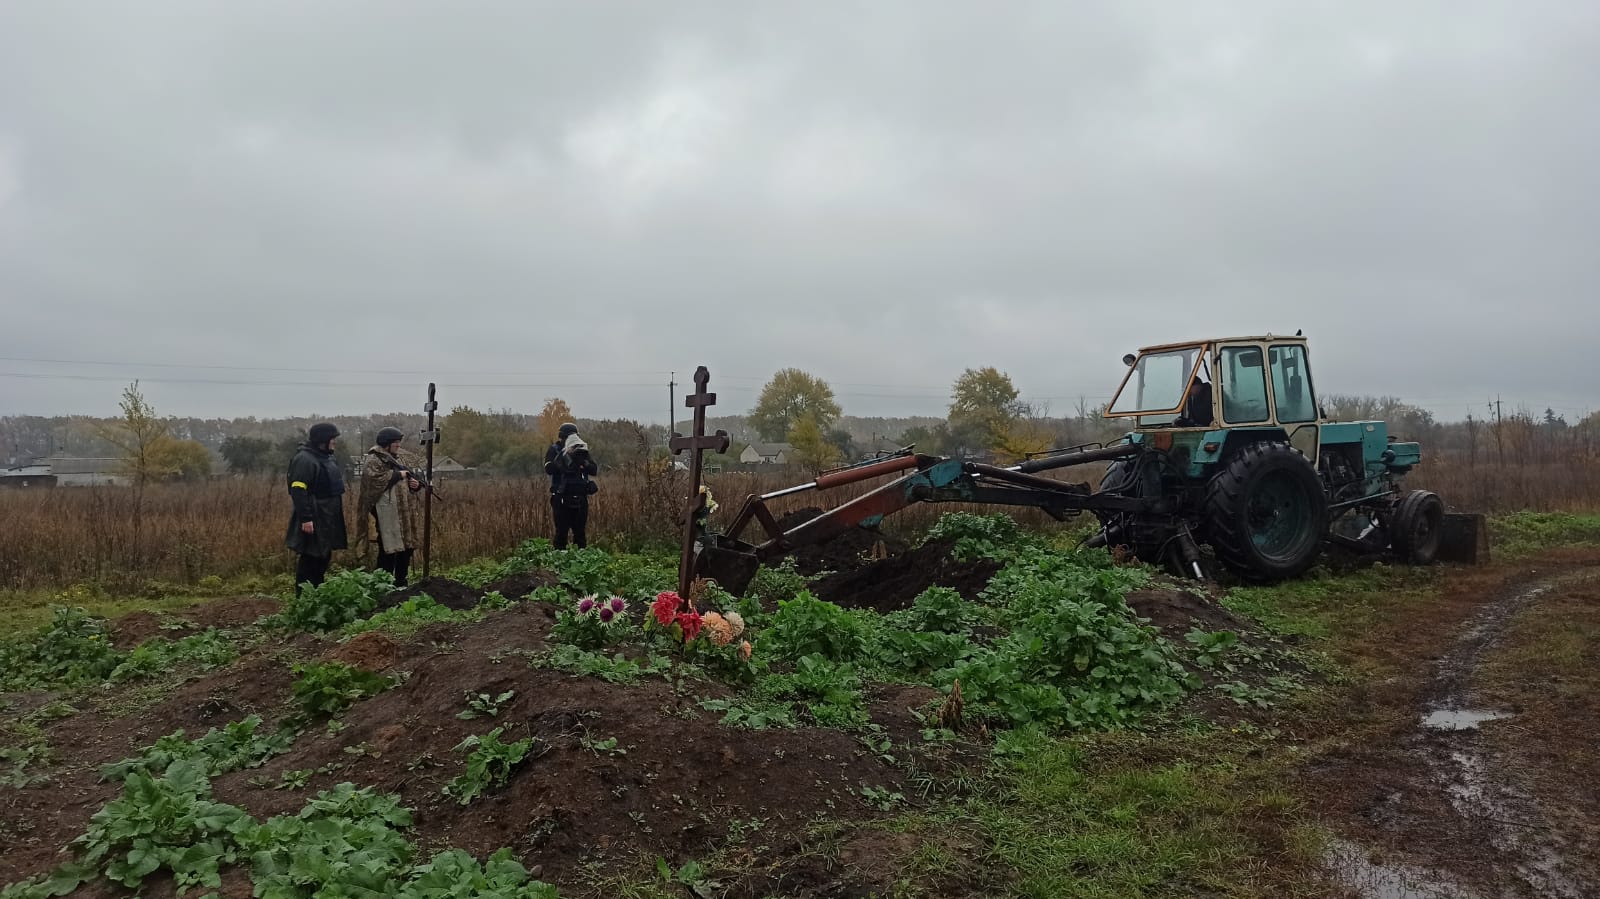 На Харківщині знайшли ще одне масове поховання, фото - Нацполіція